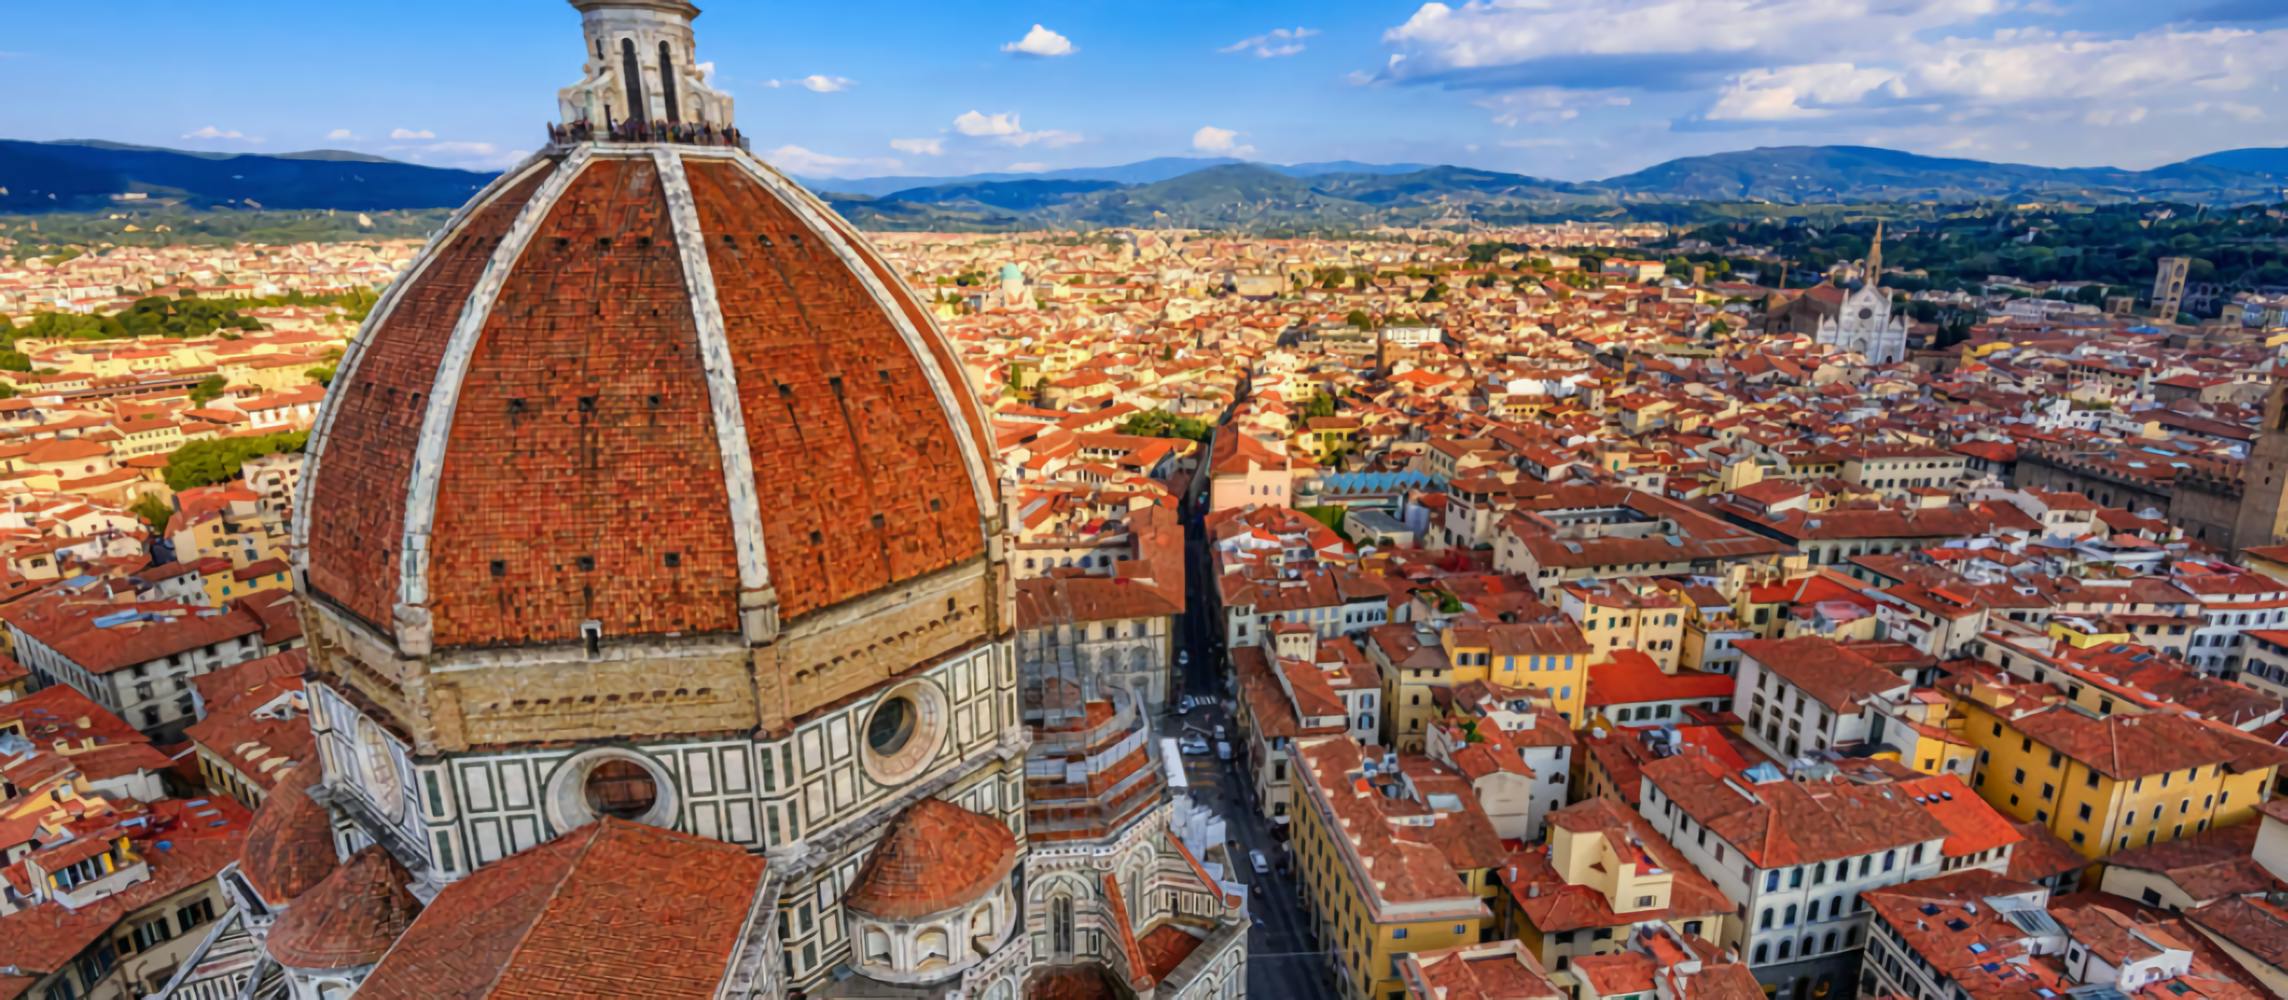 Kleingruppentour zur Kathedrale von Florenz mit Tickets ohne Anstehen